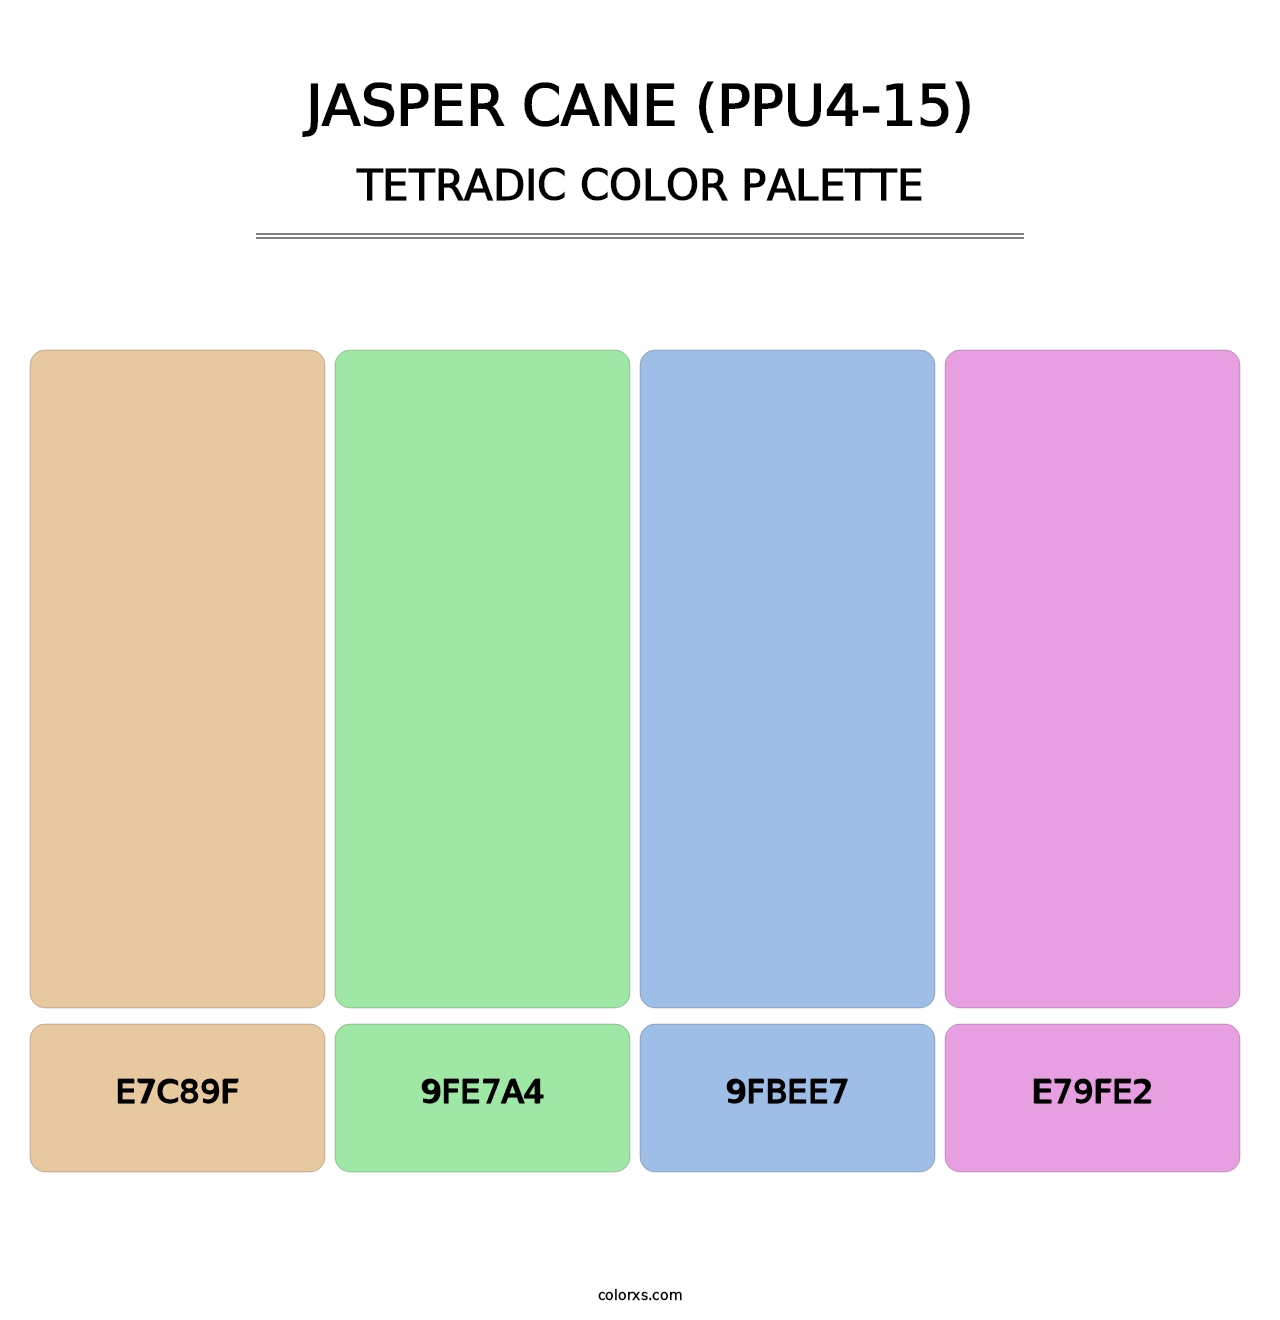 Jasper Cane (PPU4-15) - Tetradic Color Palette